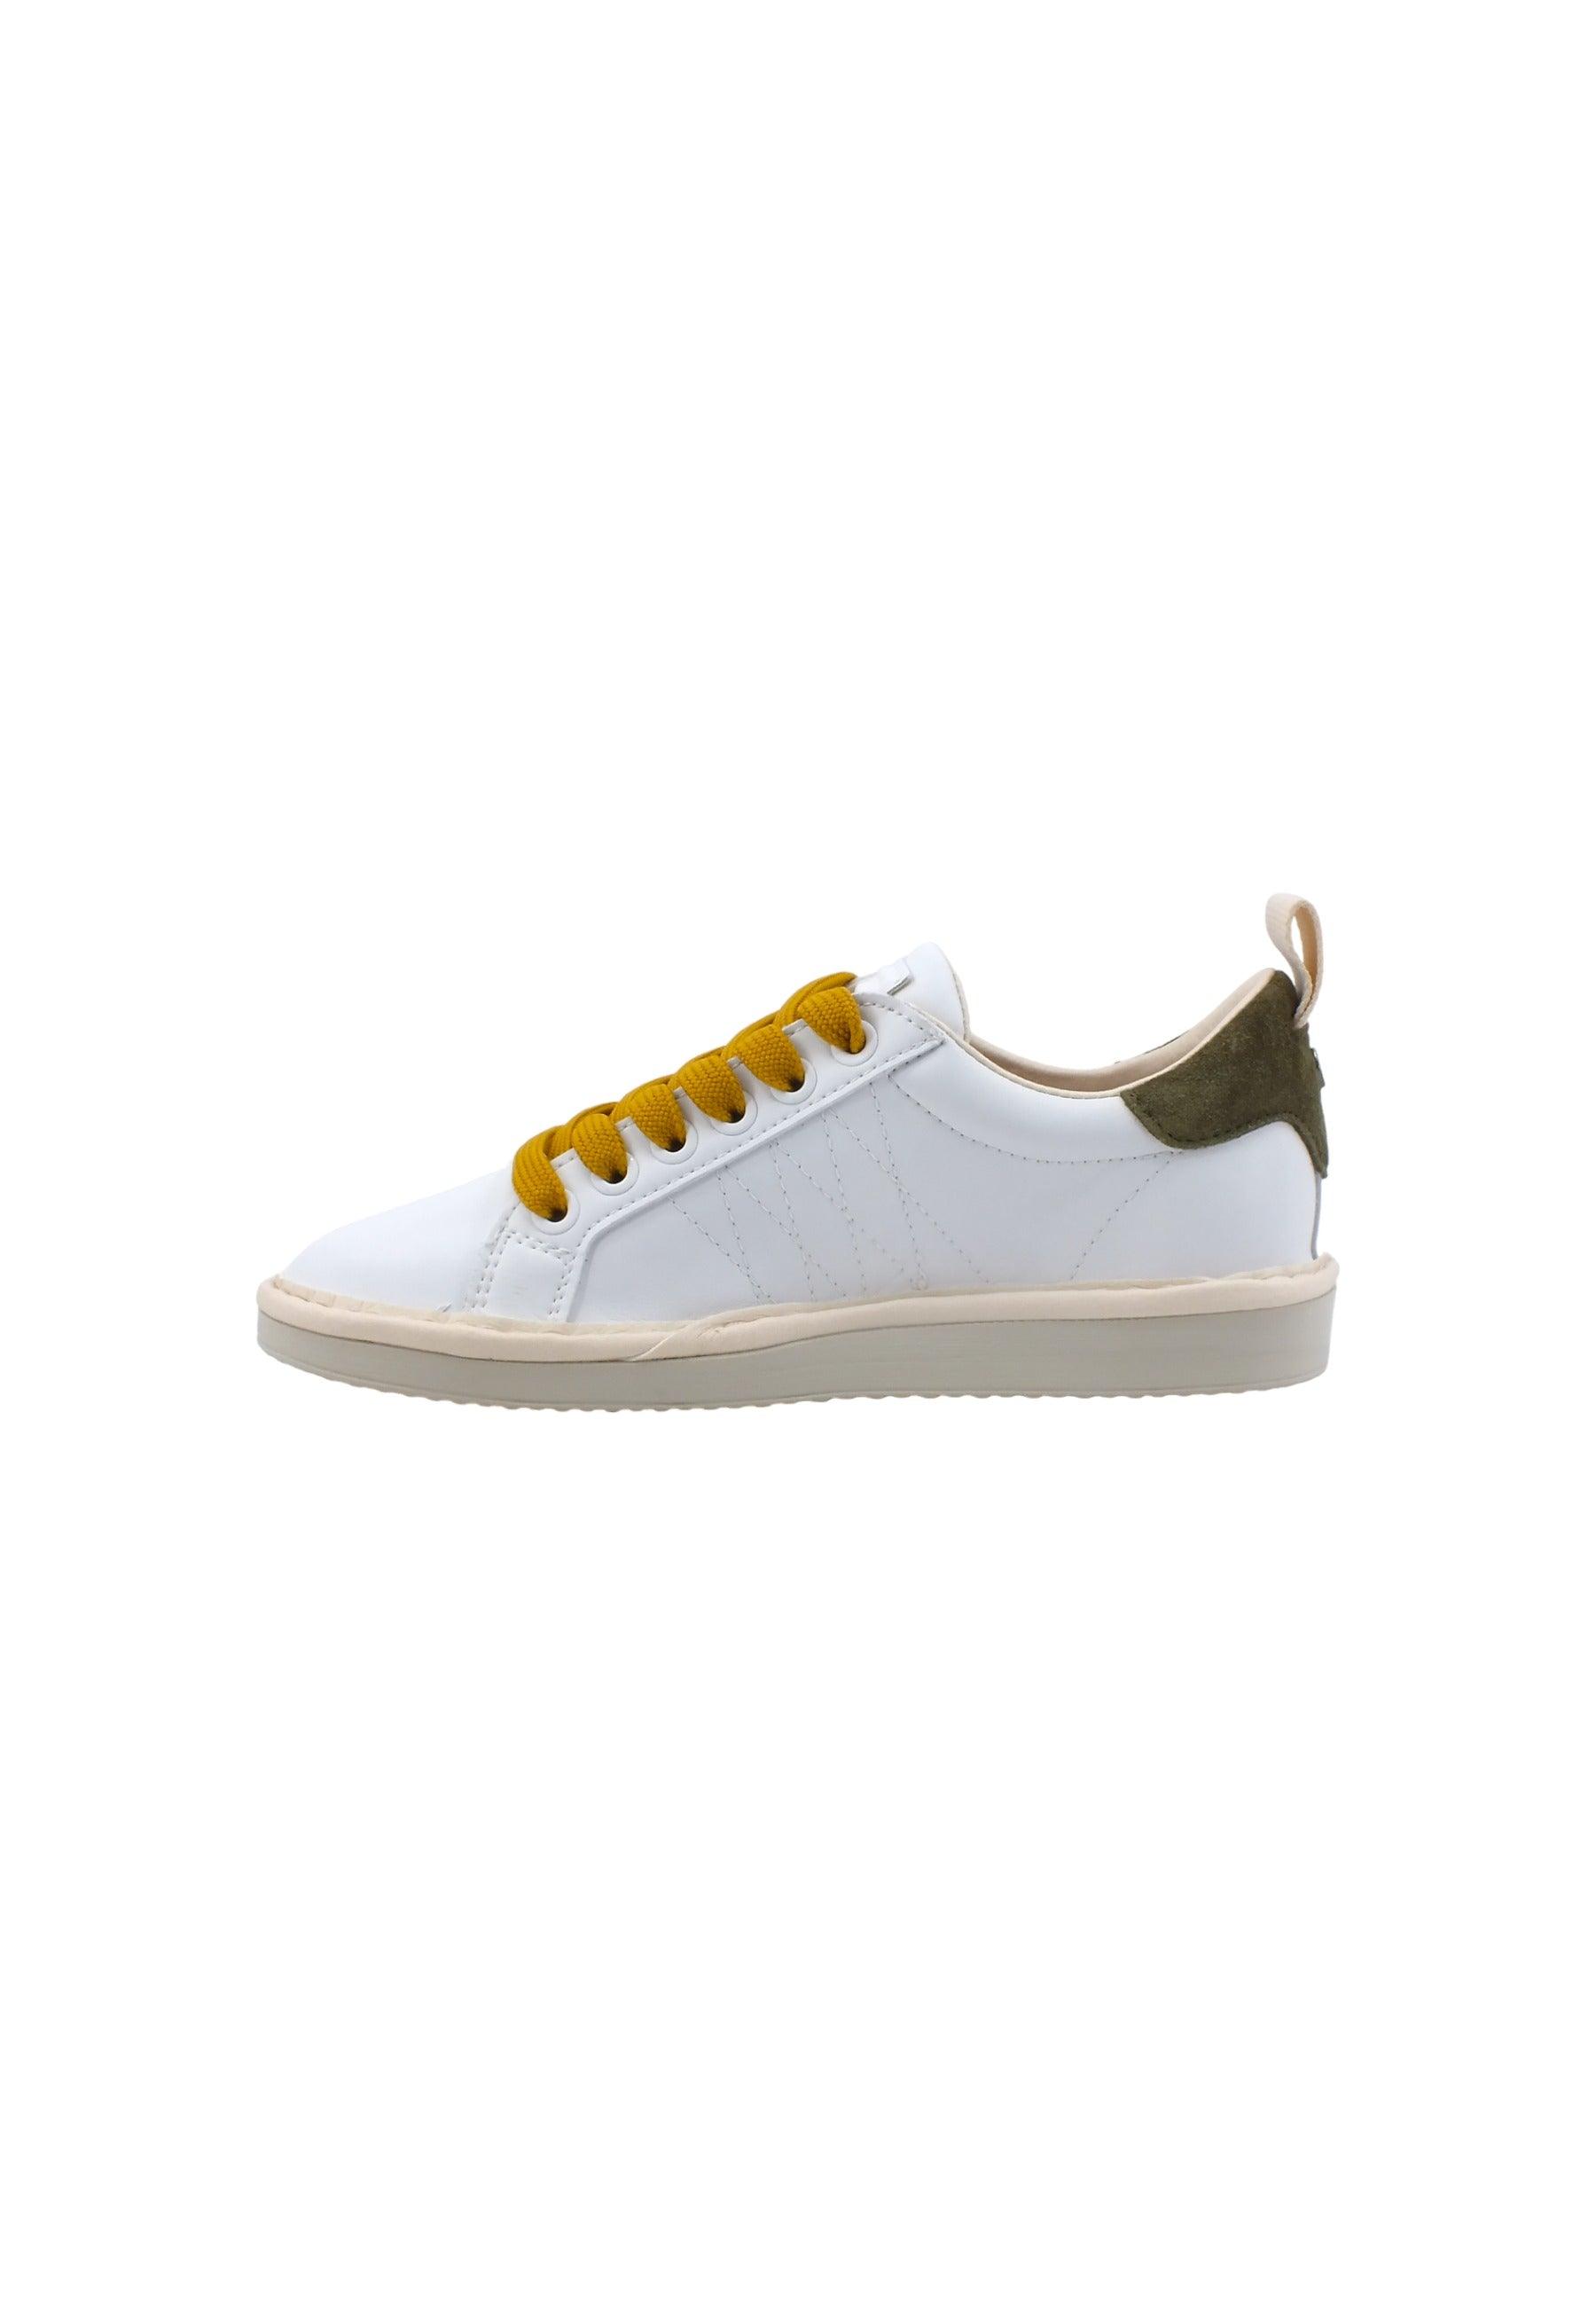 PAN CHIC Sneaker Bambino White Sage Yellow P01K00200243004 - Sandrini Calzature e Abbigliamento